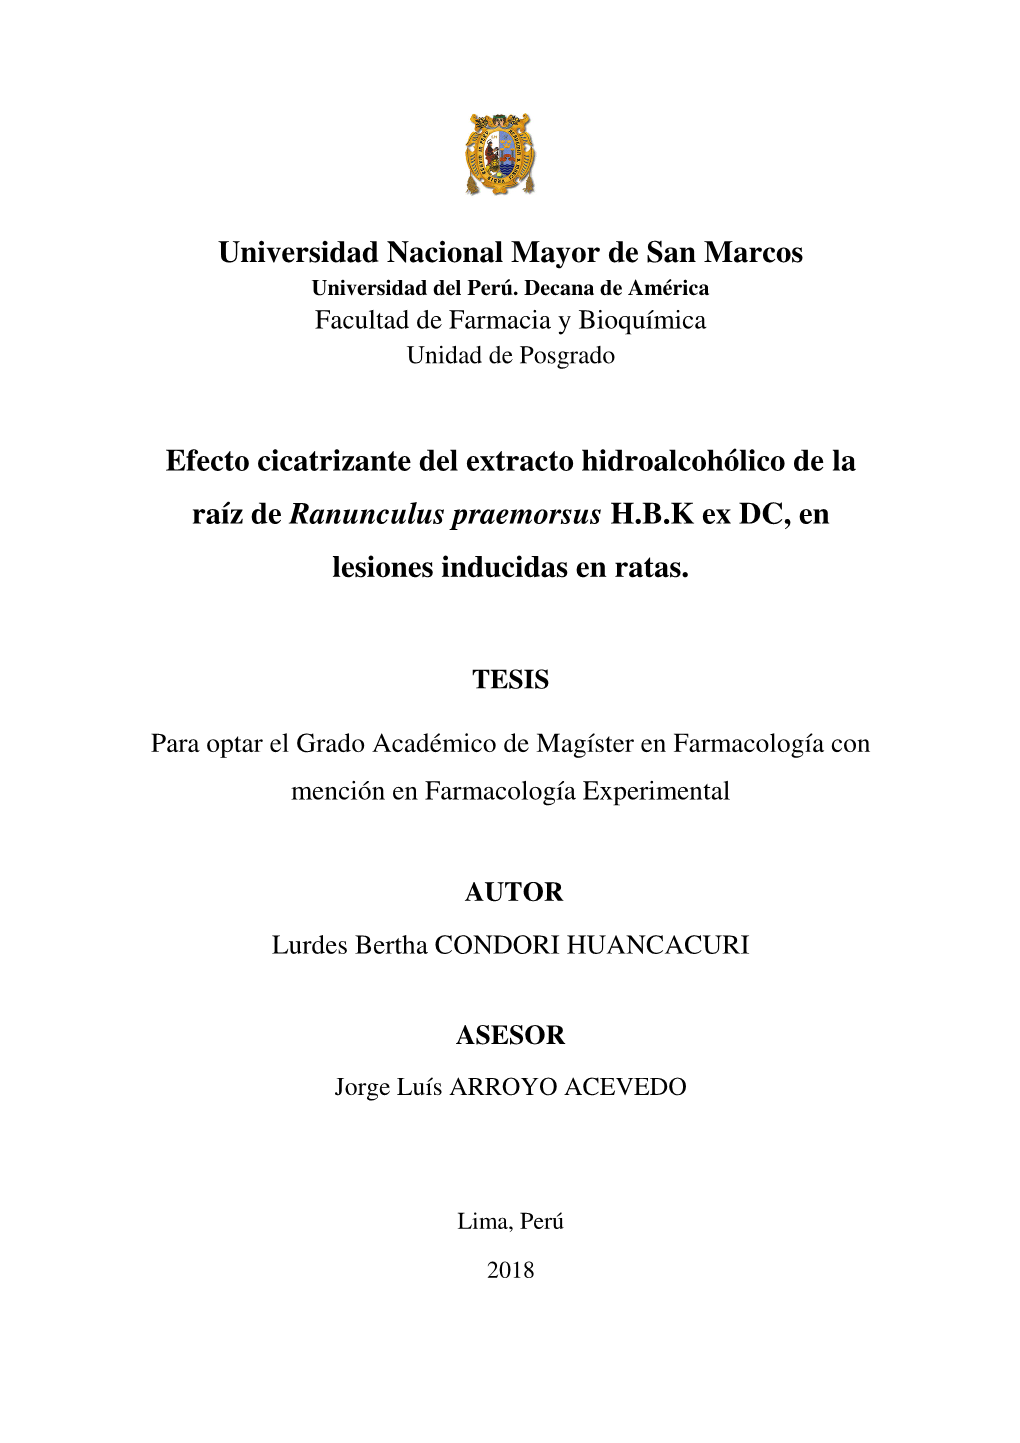 Universidad Nacional Mayor De San Marcos Efecto Cicatrizante Del